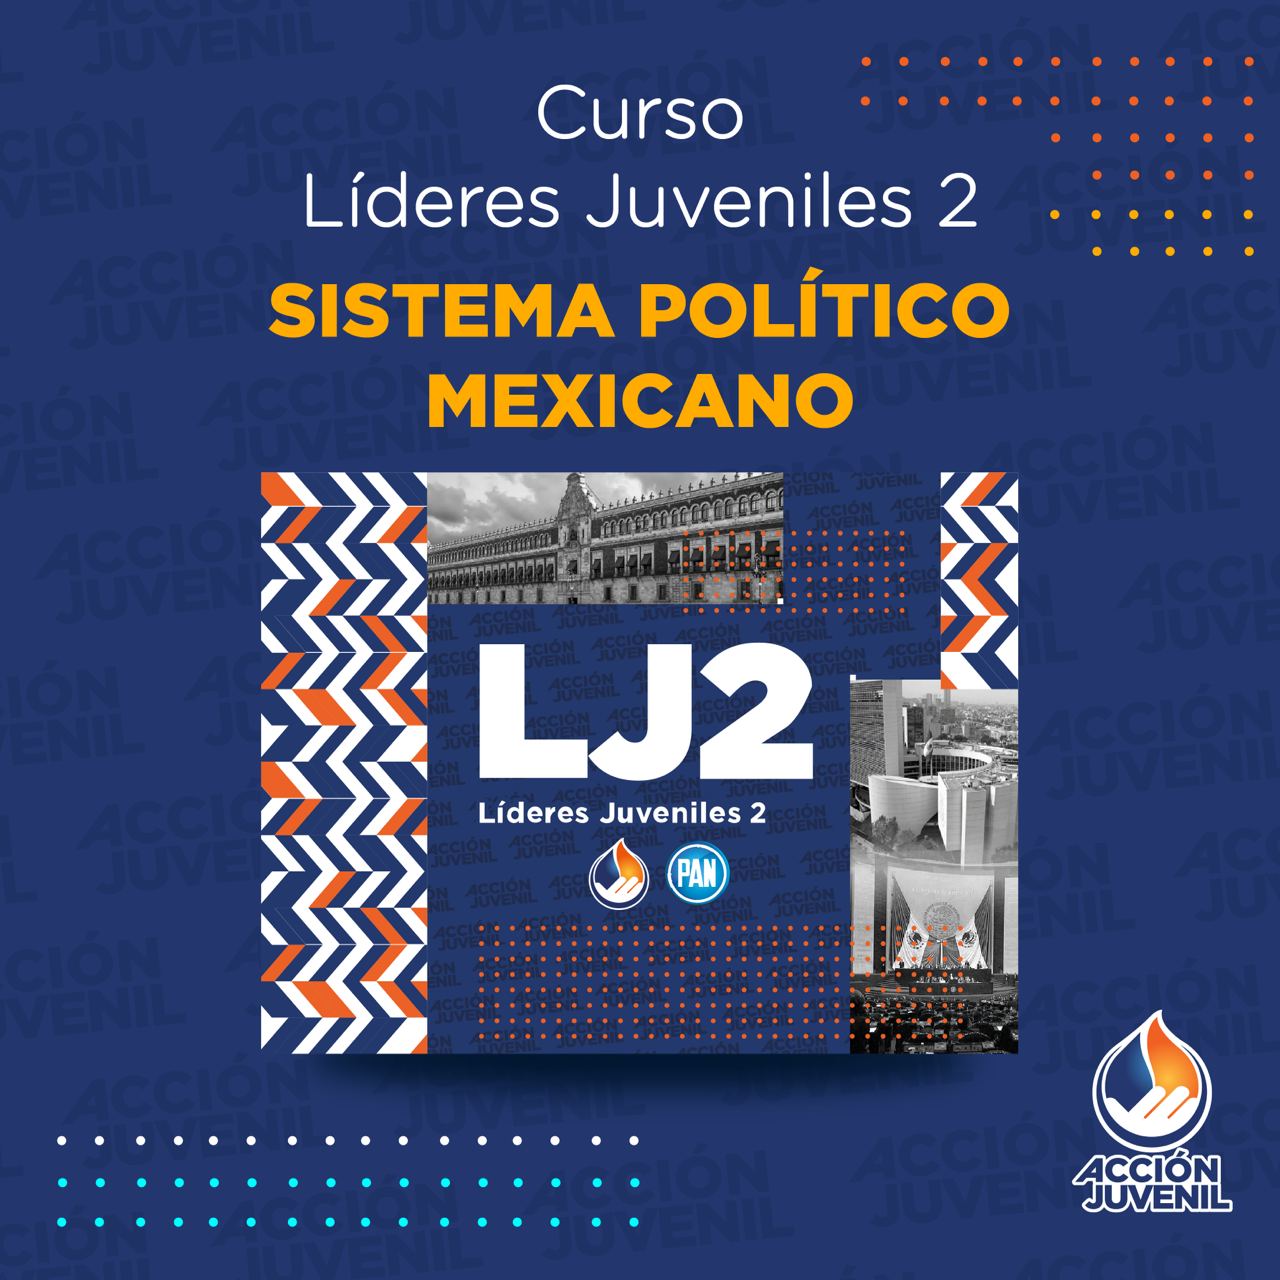 Curso Líderes Juveniles 2 Sistema Político Mexicano Casas Grandes, CHH 19/11/22